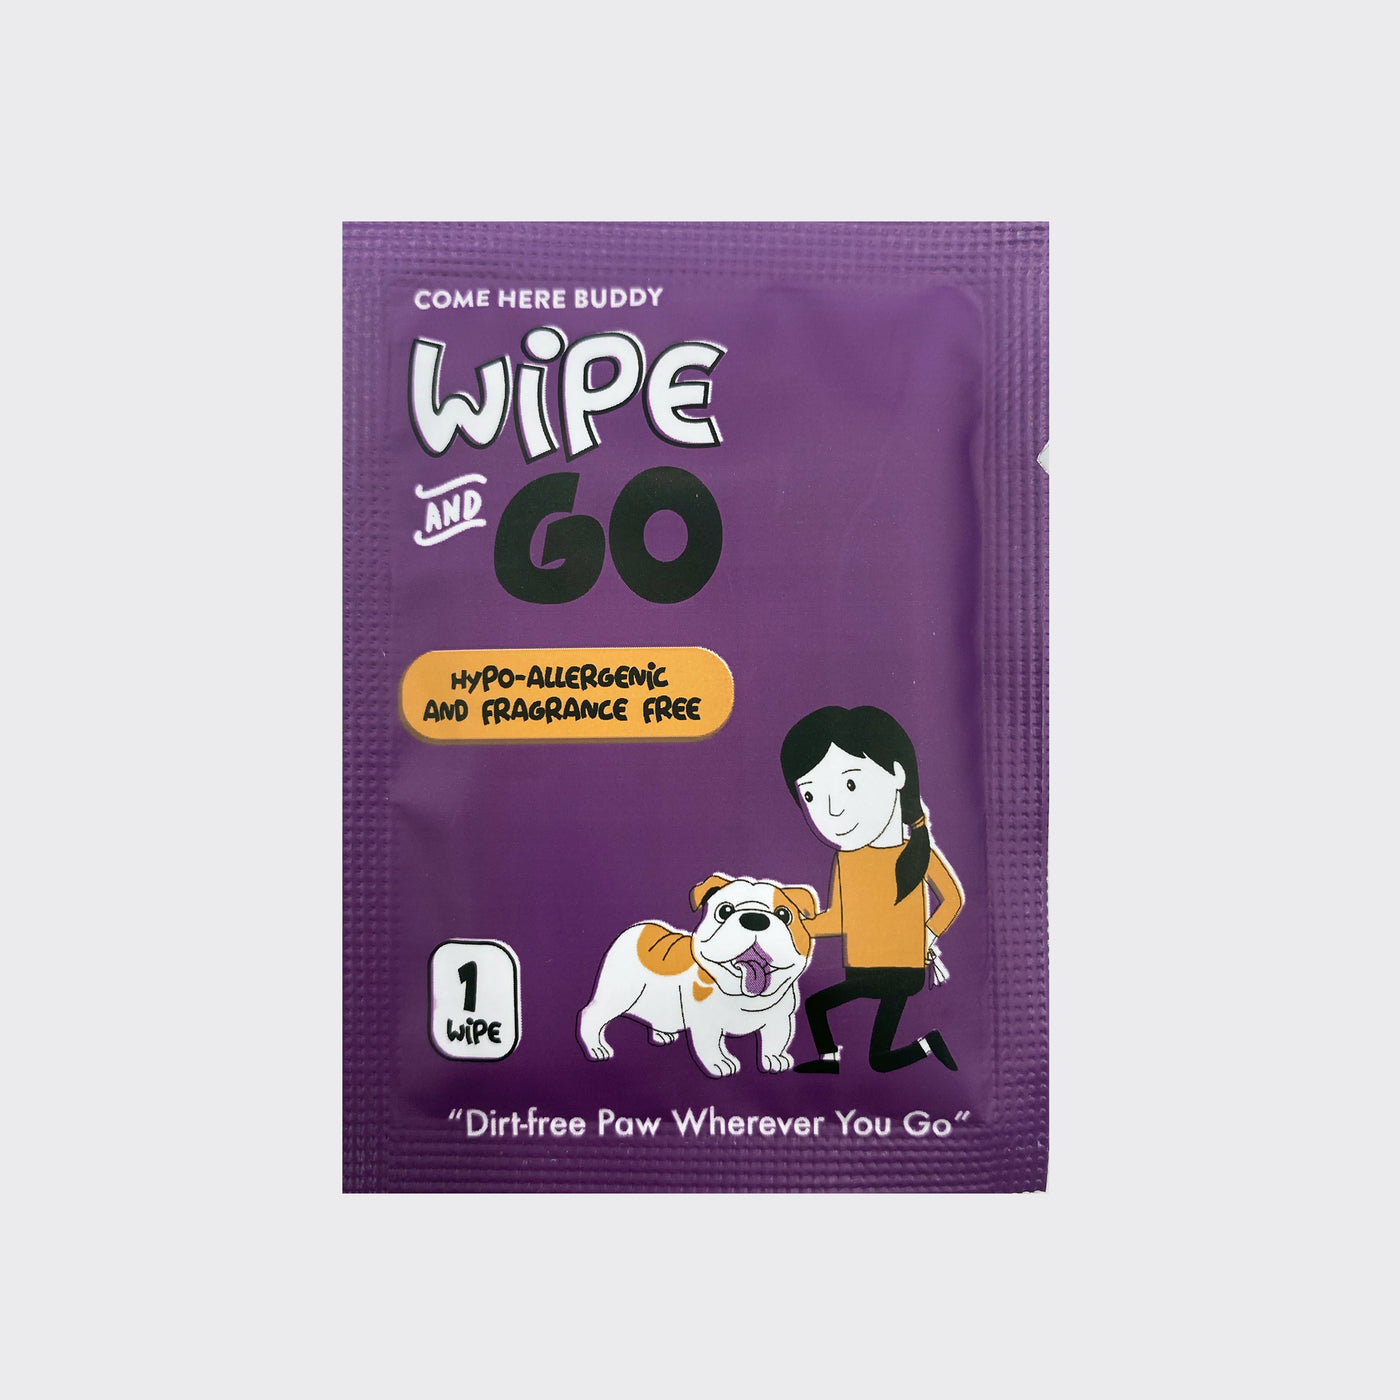 Dog Wipes